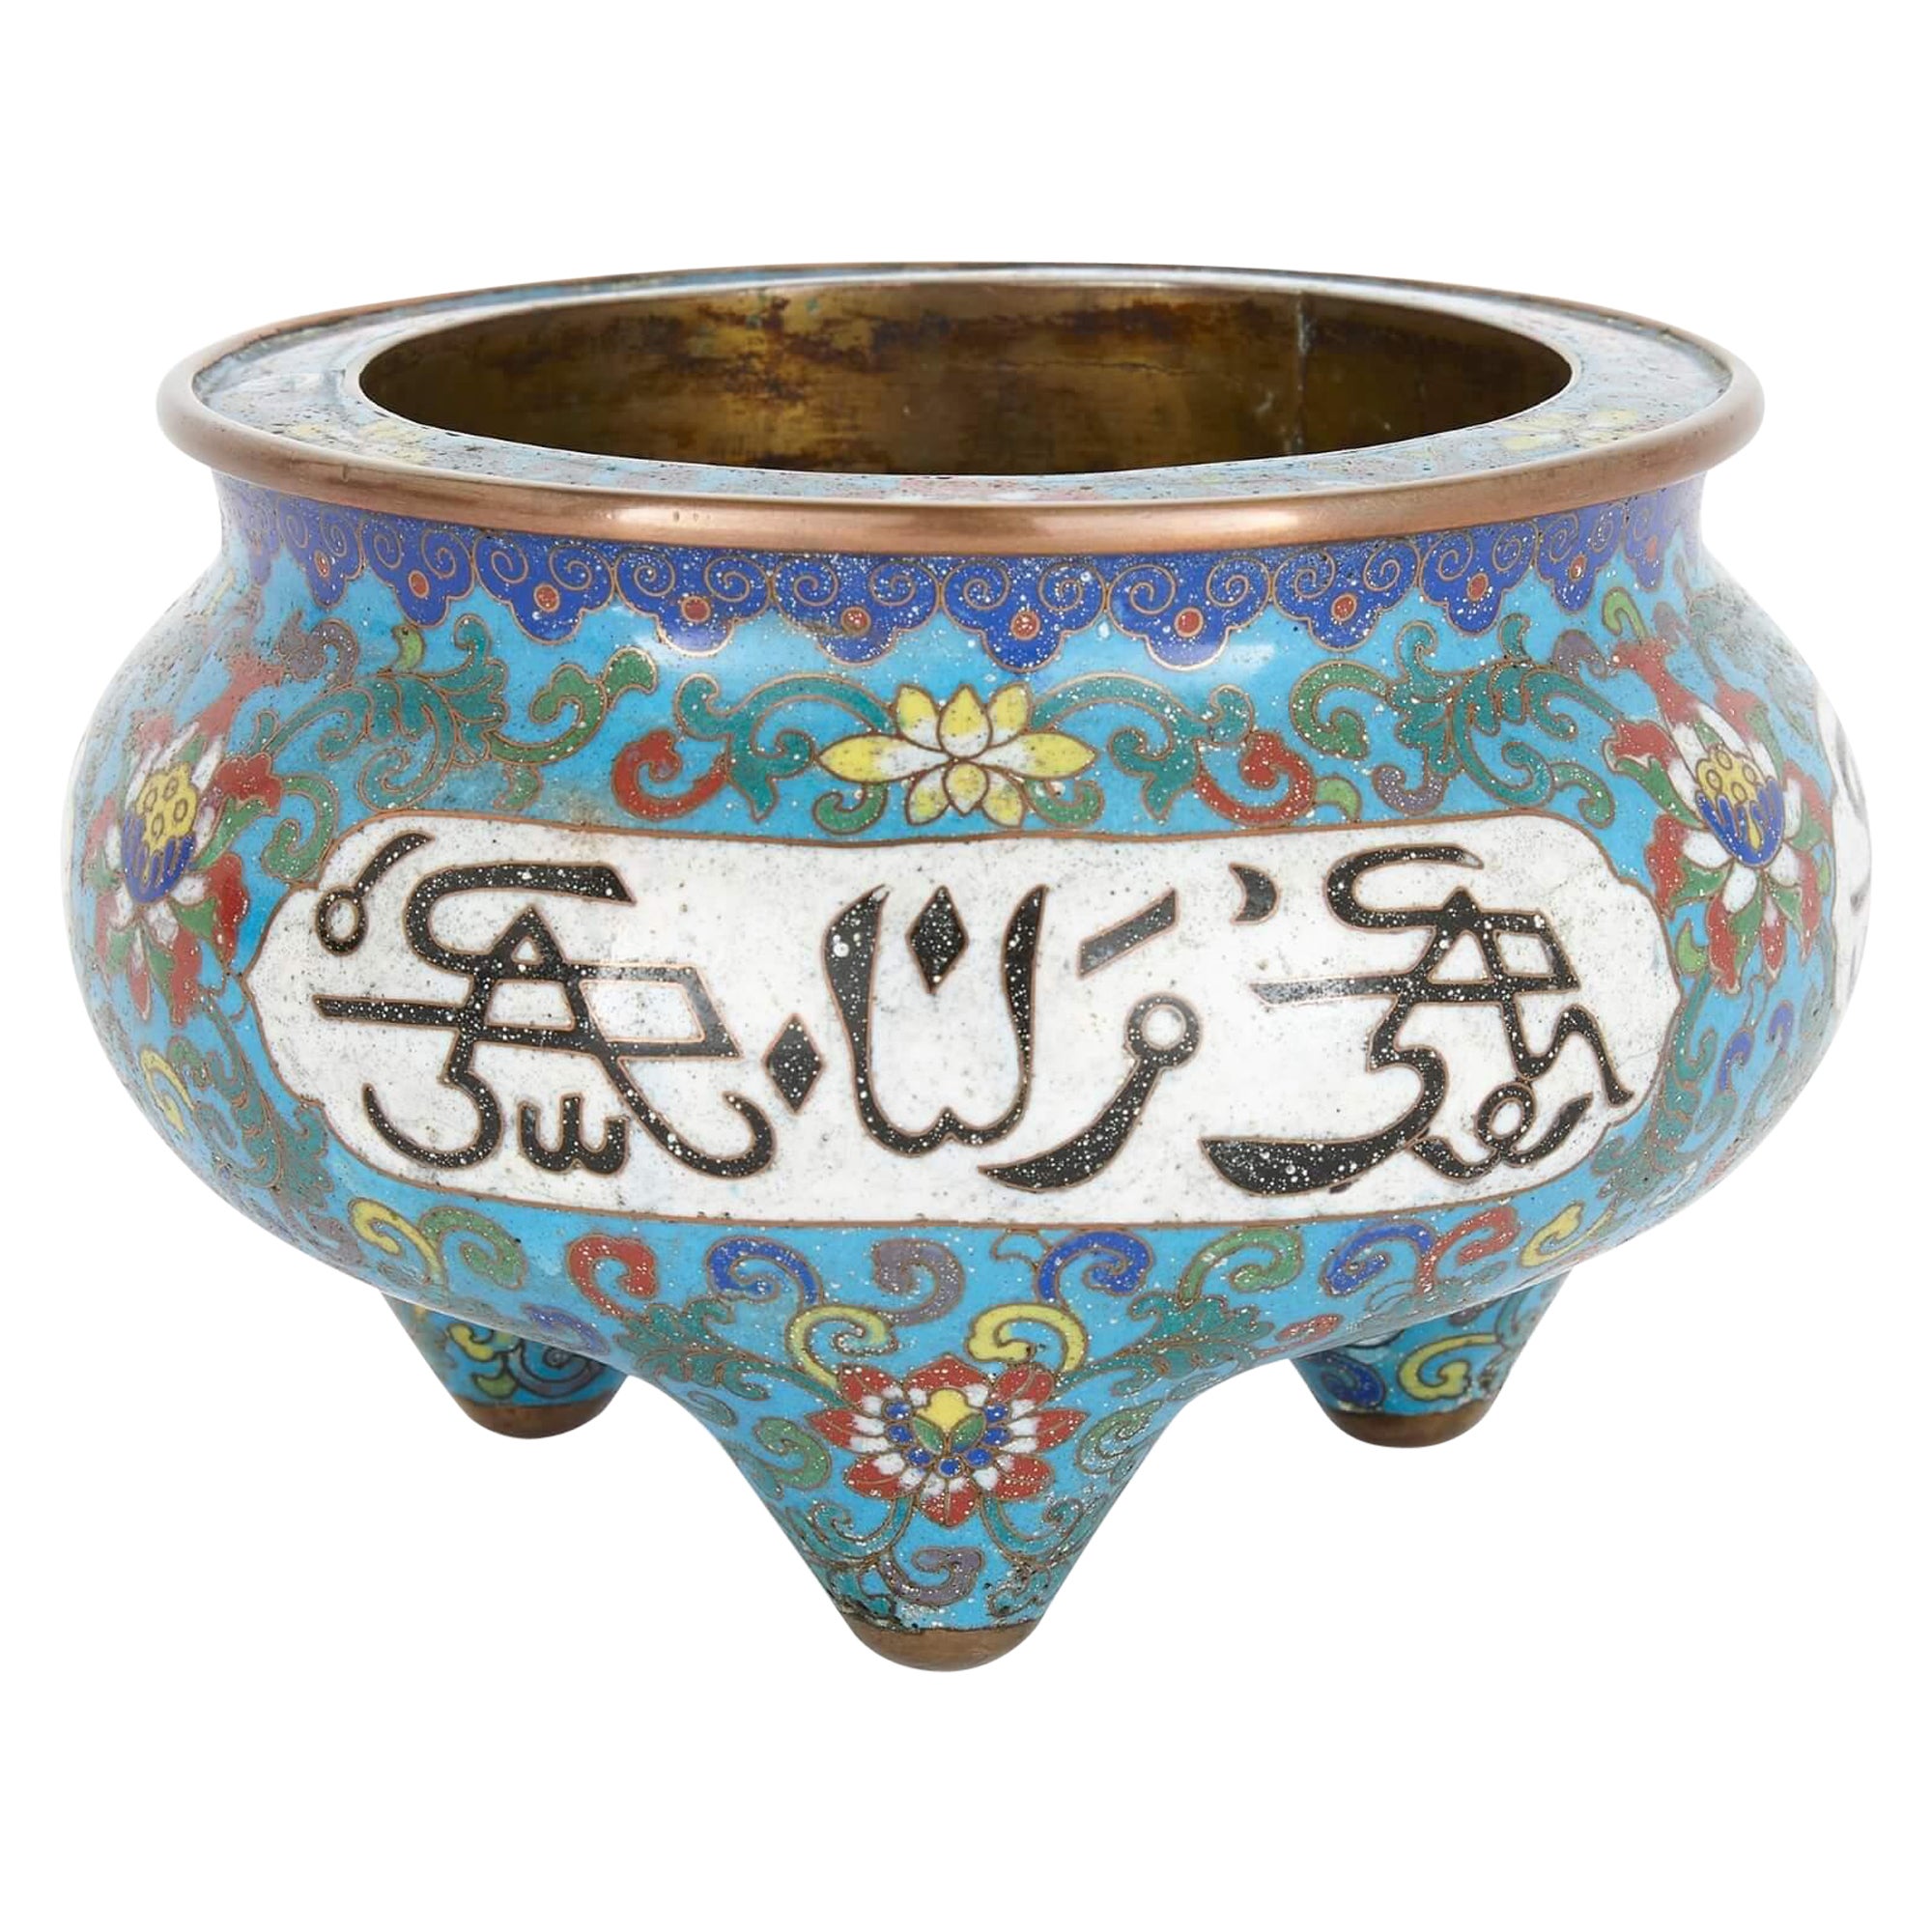 Chinesische Cloisonné-Emaille-Vase aus der Qing Dynasty mit arabischen Inschriften